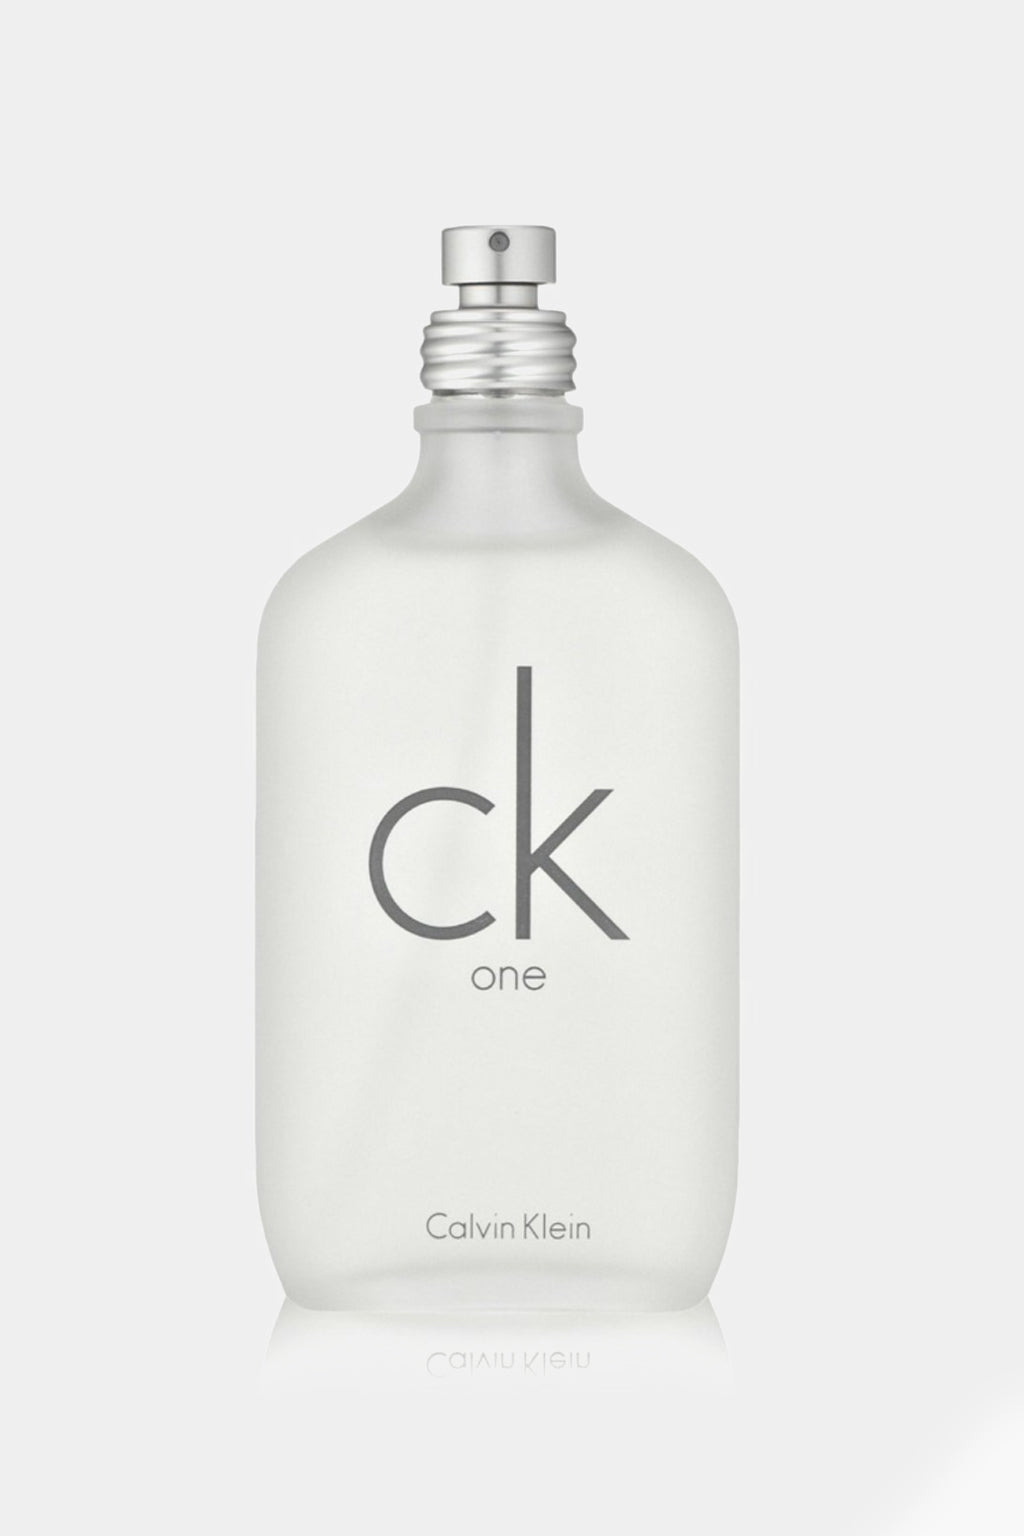 Calvin Klein - One Eau de Toilette